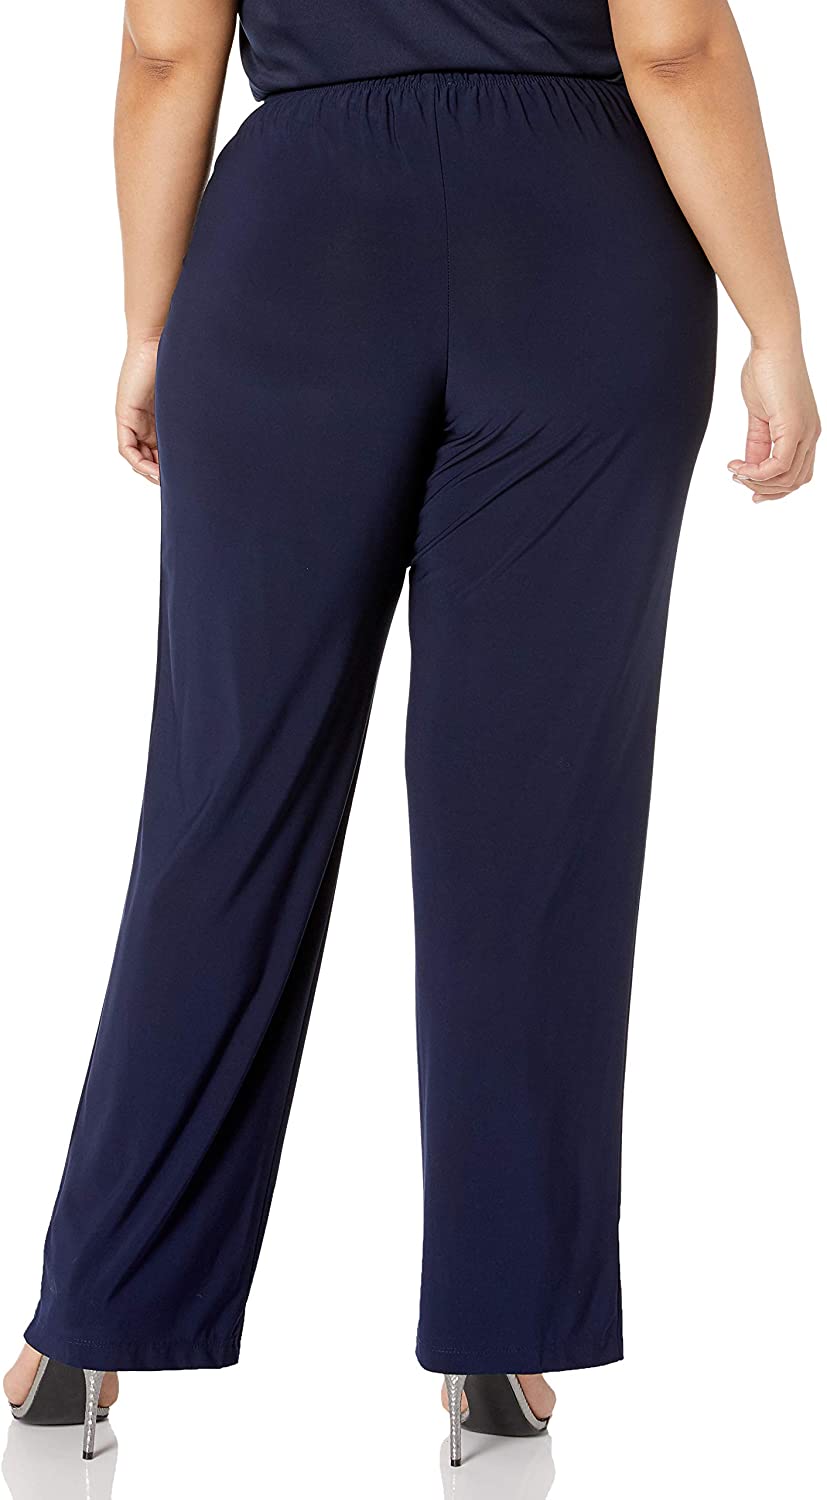 R&M Richards Women's Plus Size Lace Pant Set | eBay